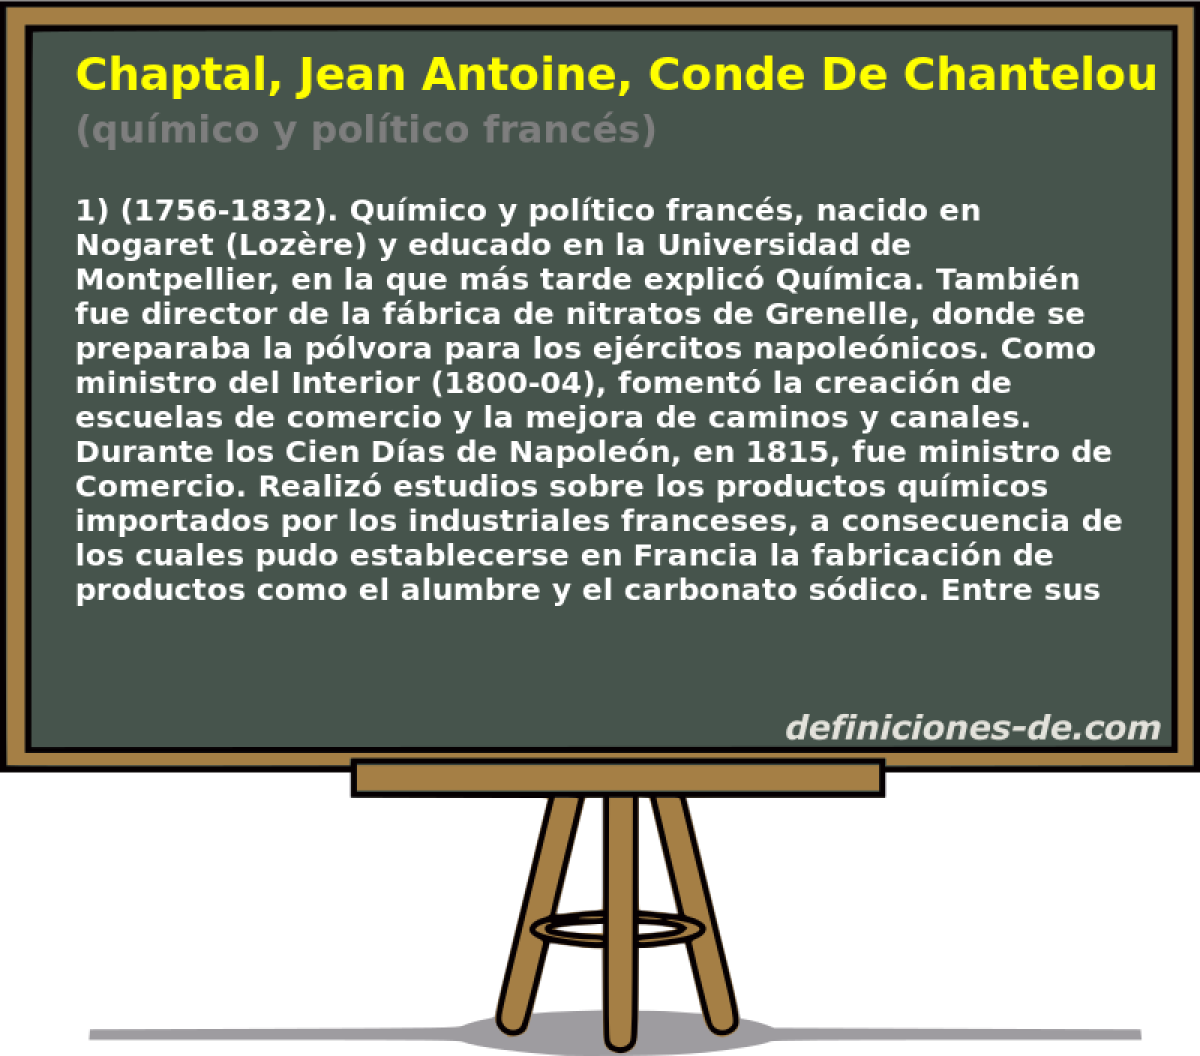 Chaptal, Jean Antoine, Conde De Chanteloup (qumico y poltico francs)